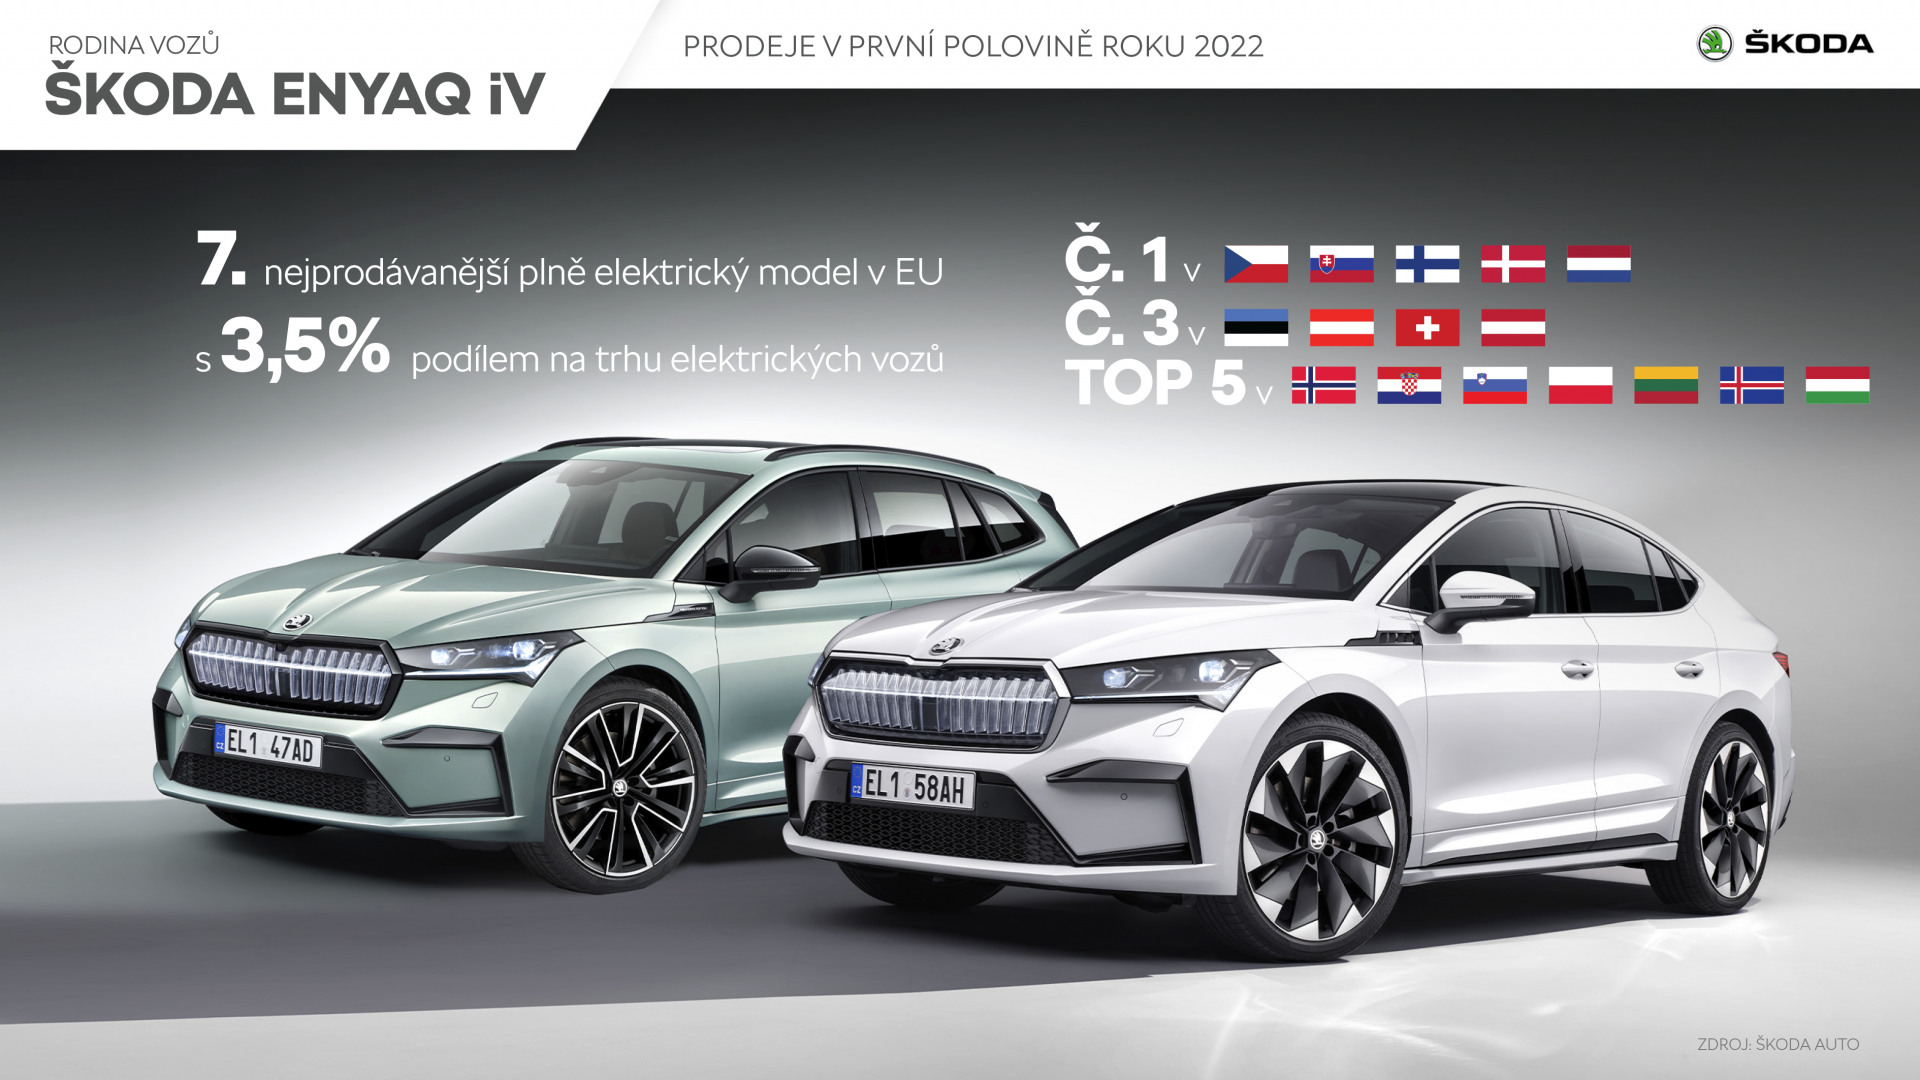 Škoda Enyaq iV: Prodeje v Evropě v první polovině roku 2022